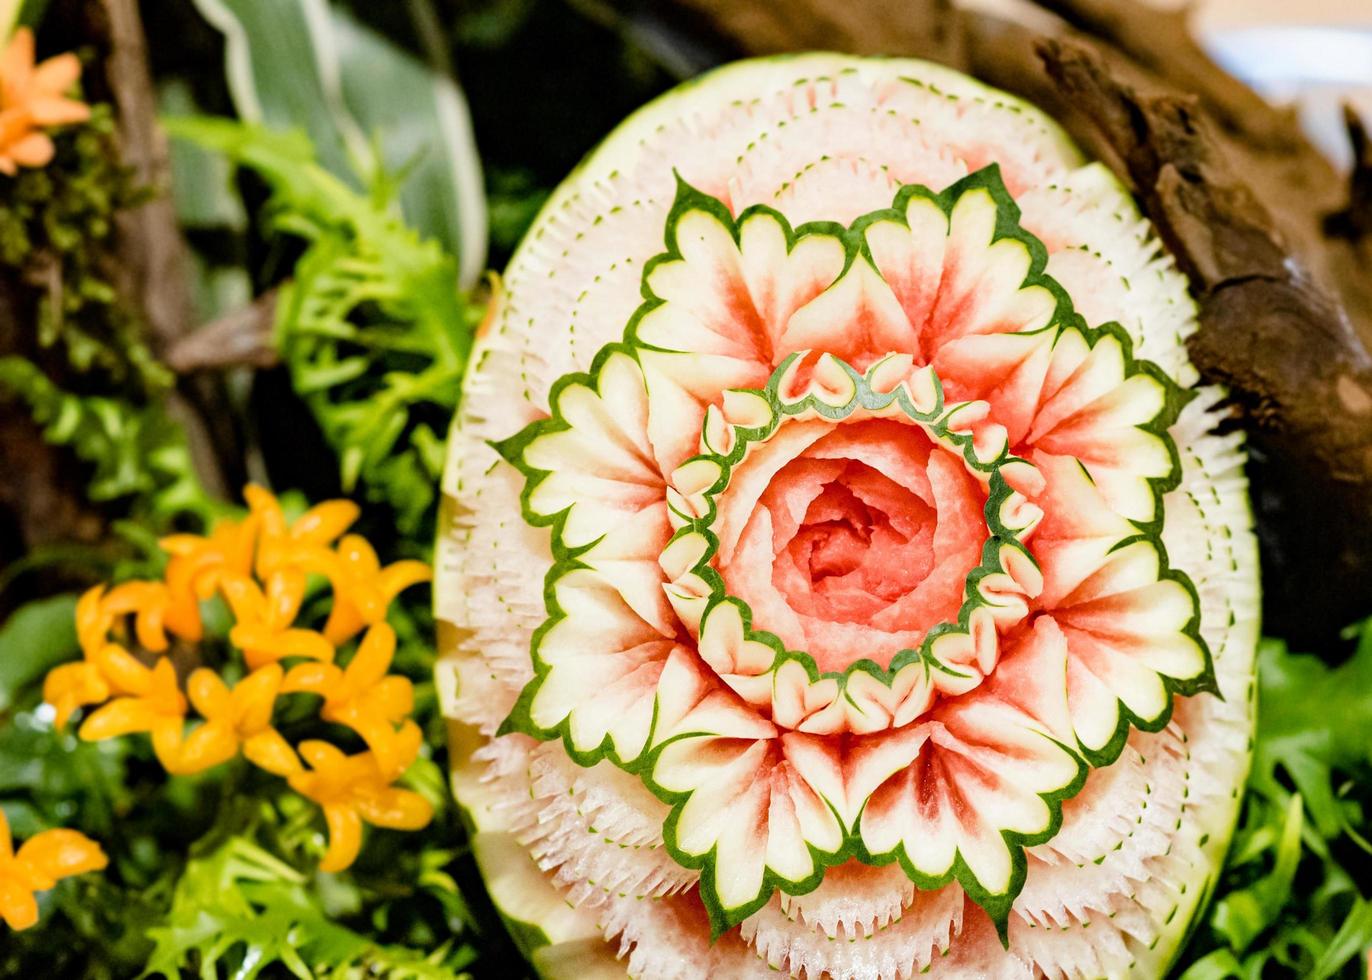 sculptures de fruits et légumes, affichage décoration de sculpture de fruits thaïlandais photo